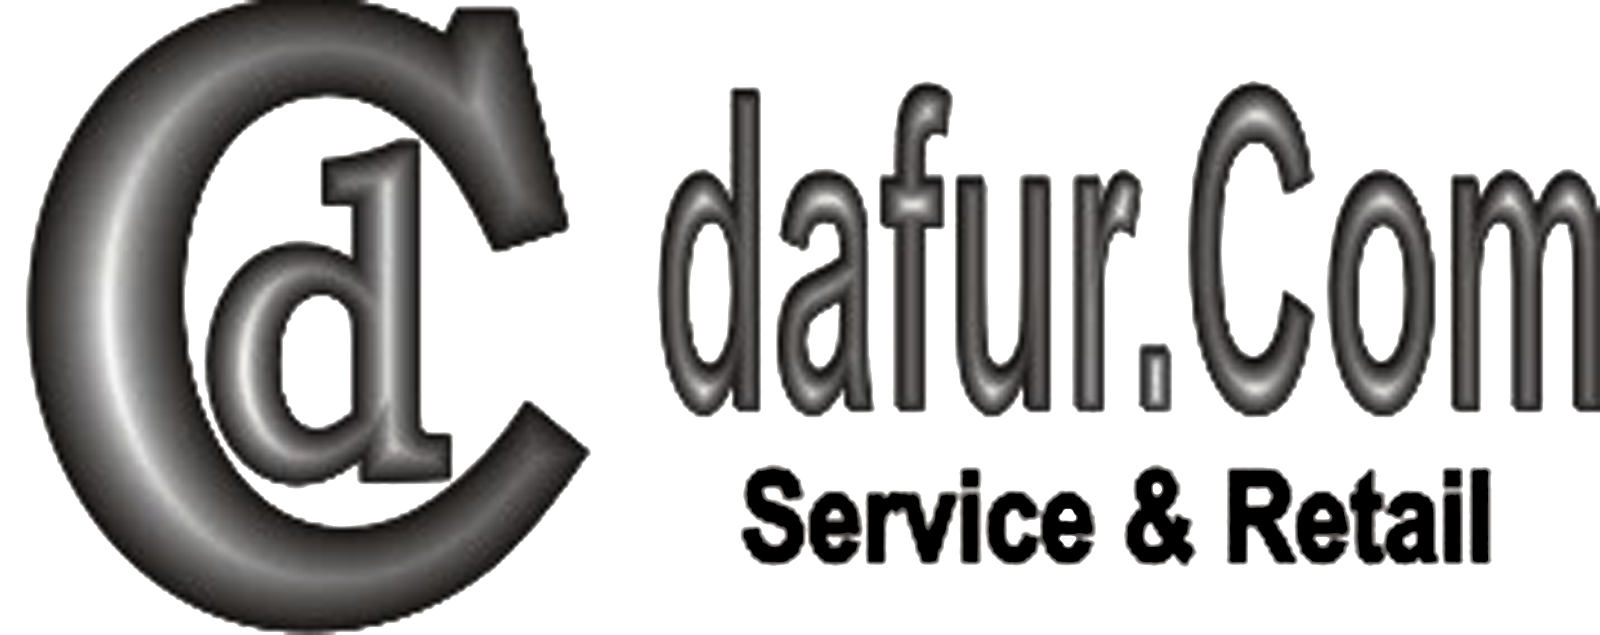 dafur.com Service & Retail